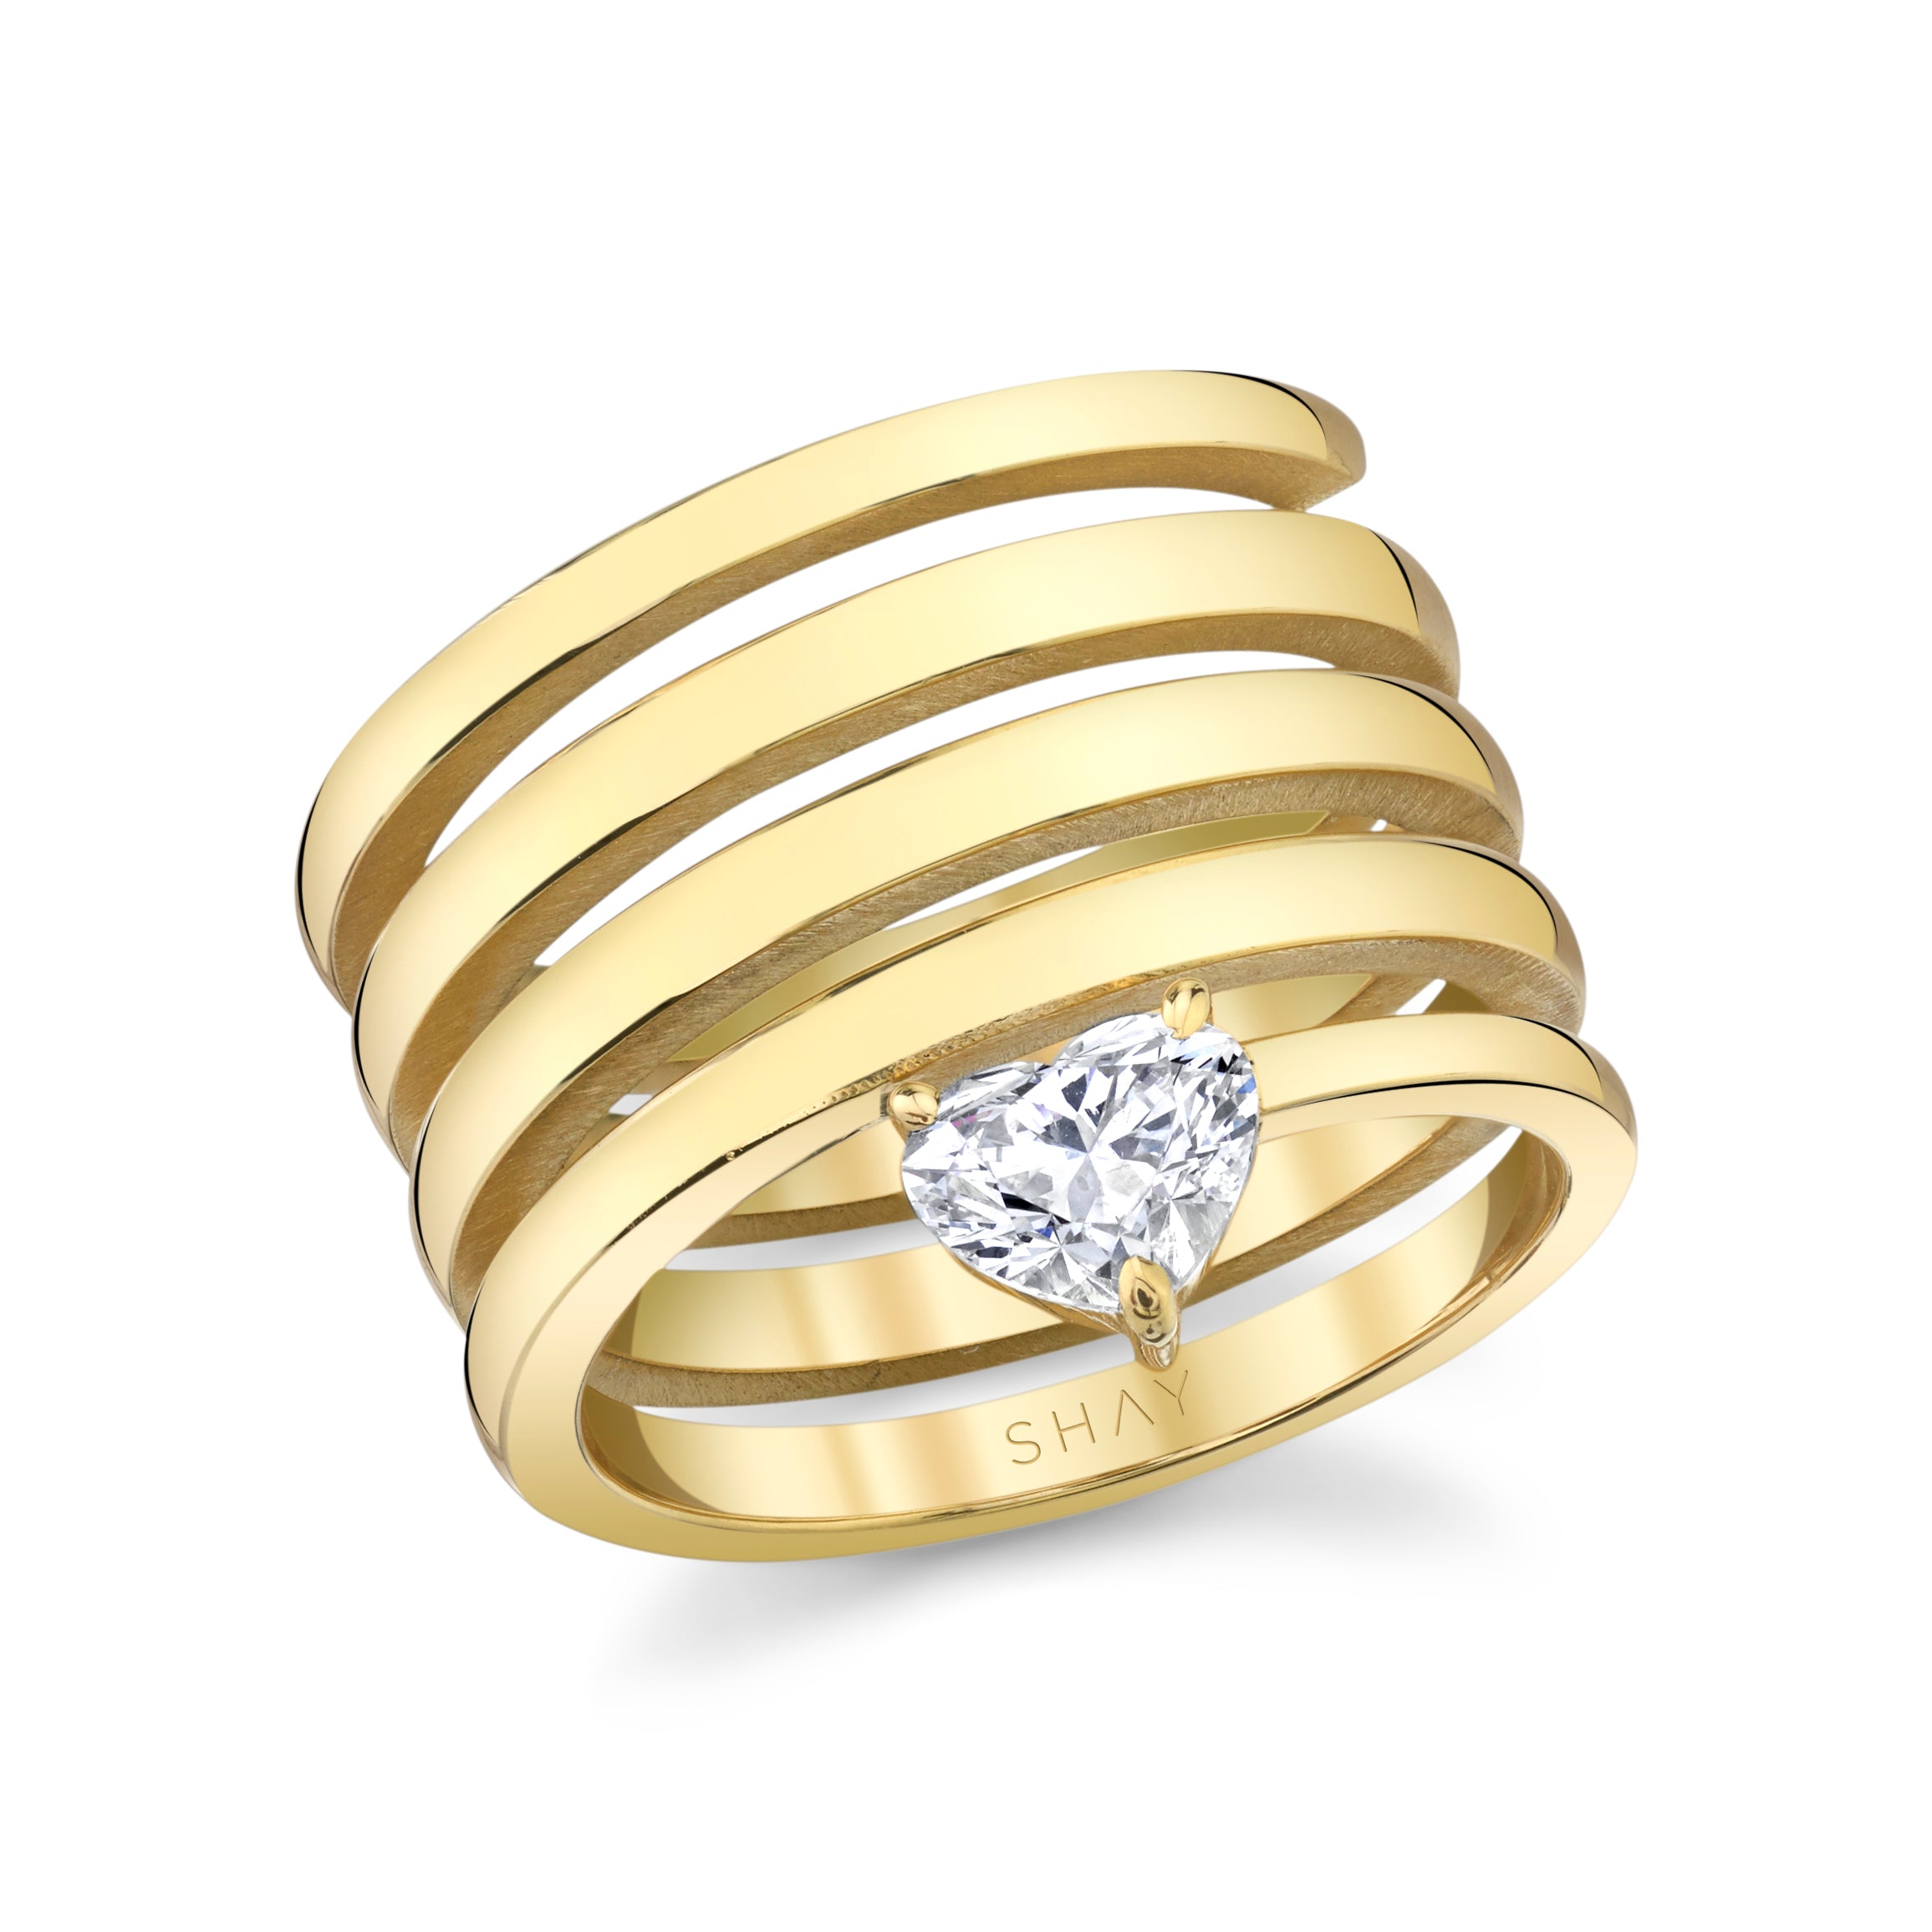 Golden Gold Ladies Spiral Ring, Weight: 6gm